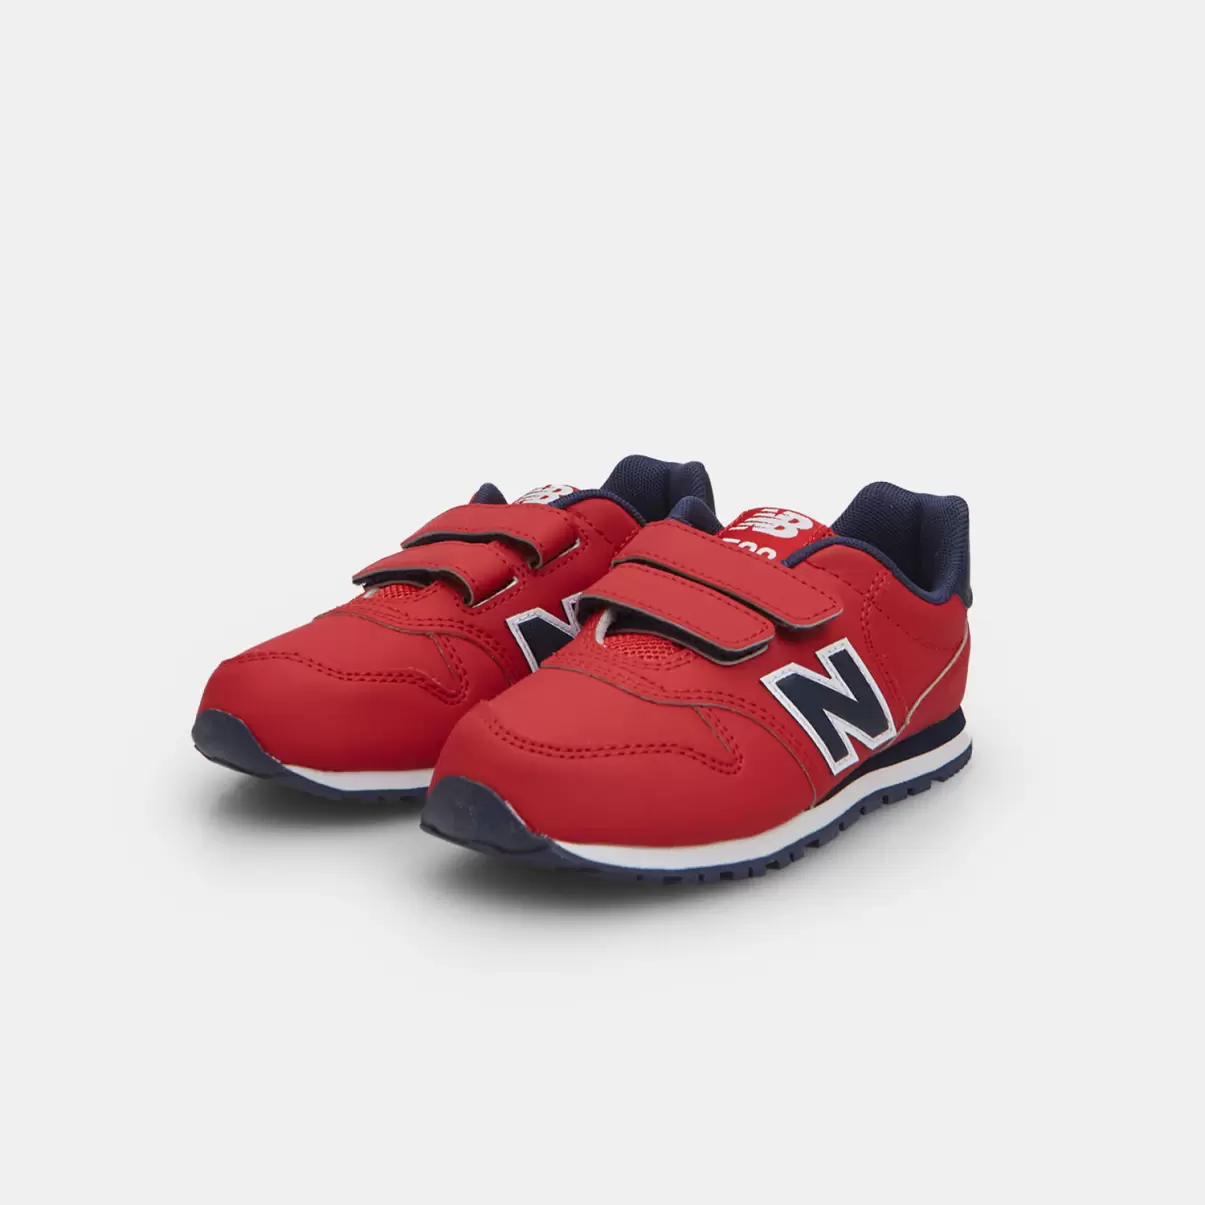 Bata Consumatore Scarpe Sportive Bambini Sneakers Da Bambina New Balance Con Strappi Rossa - 1